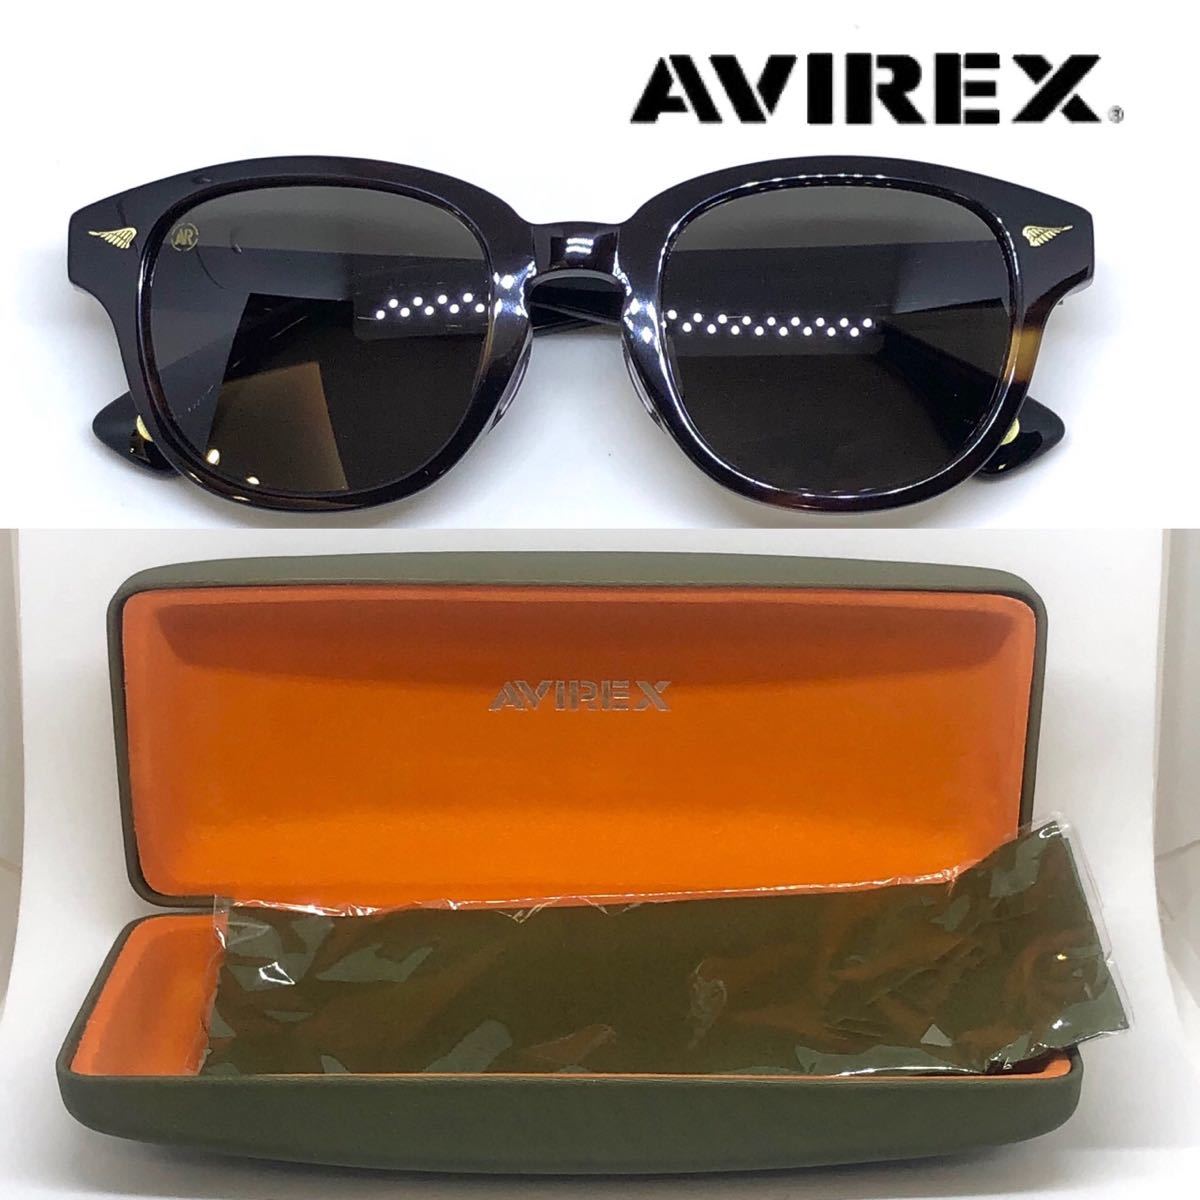 新品 送料無料 AVIREX アヴィレックス サングラス AR702 BRS/BLGR ブラウンササ レンズカラー スモーク MA-1_画像3